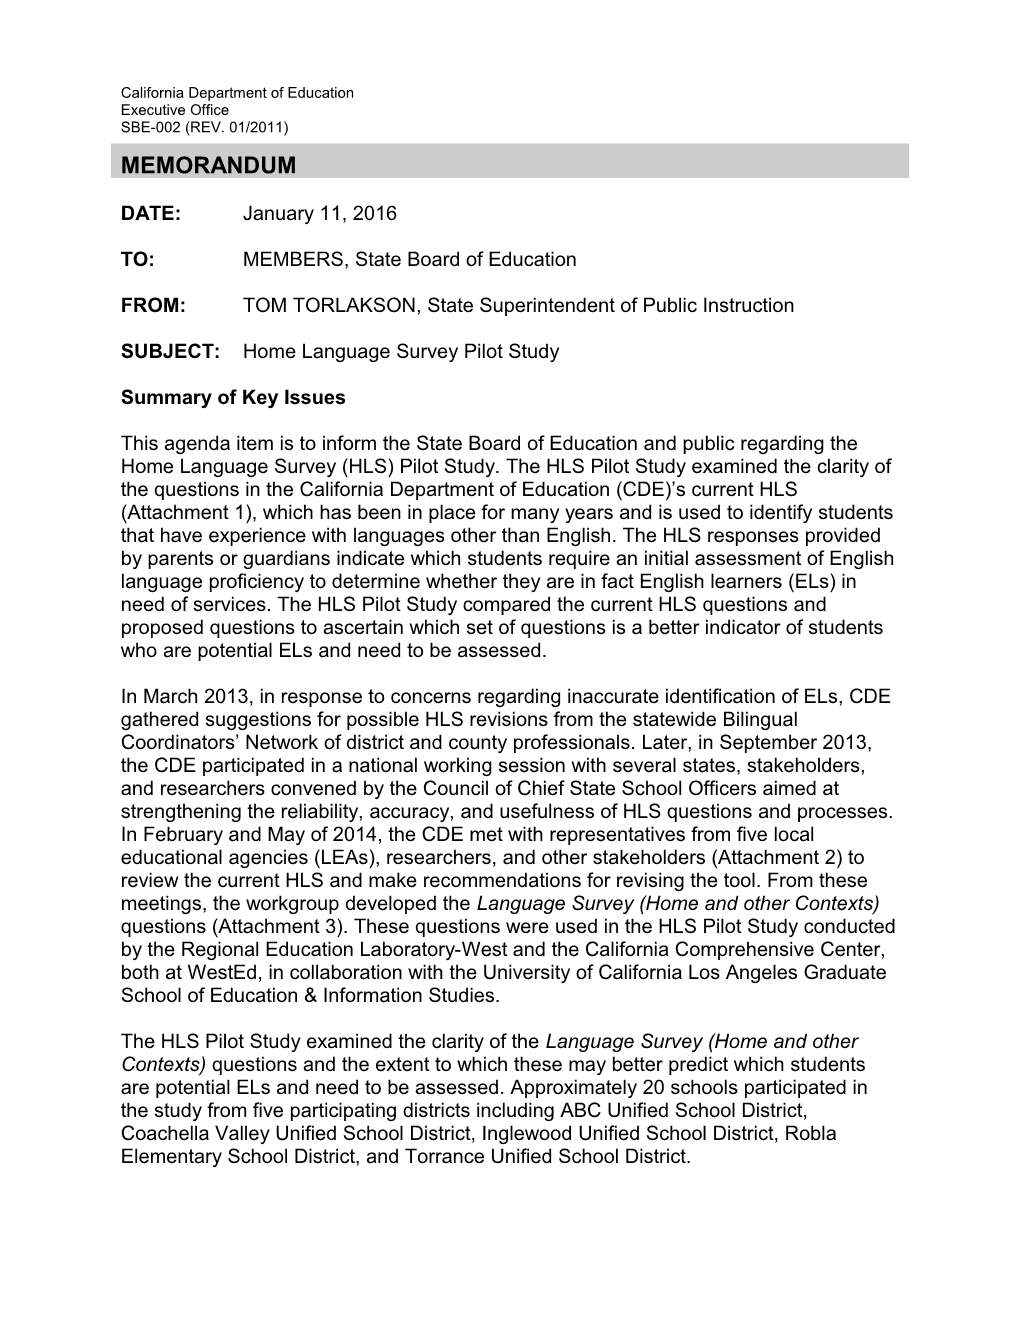 February 2016 Memo ELSD Item 01 - Information Memorandum (CA State Board of Education)